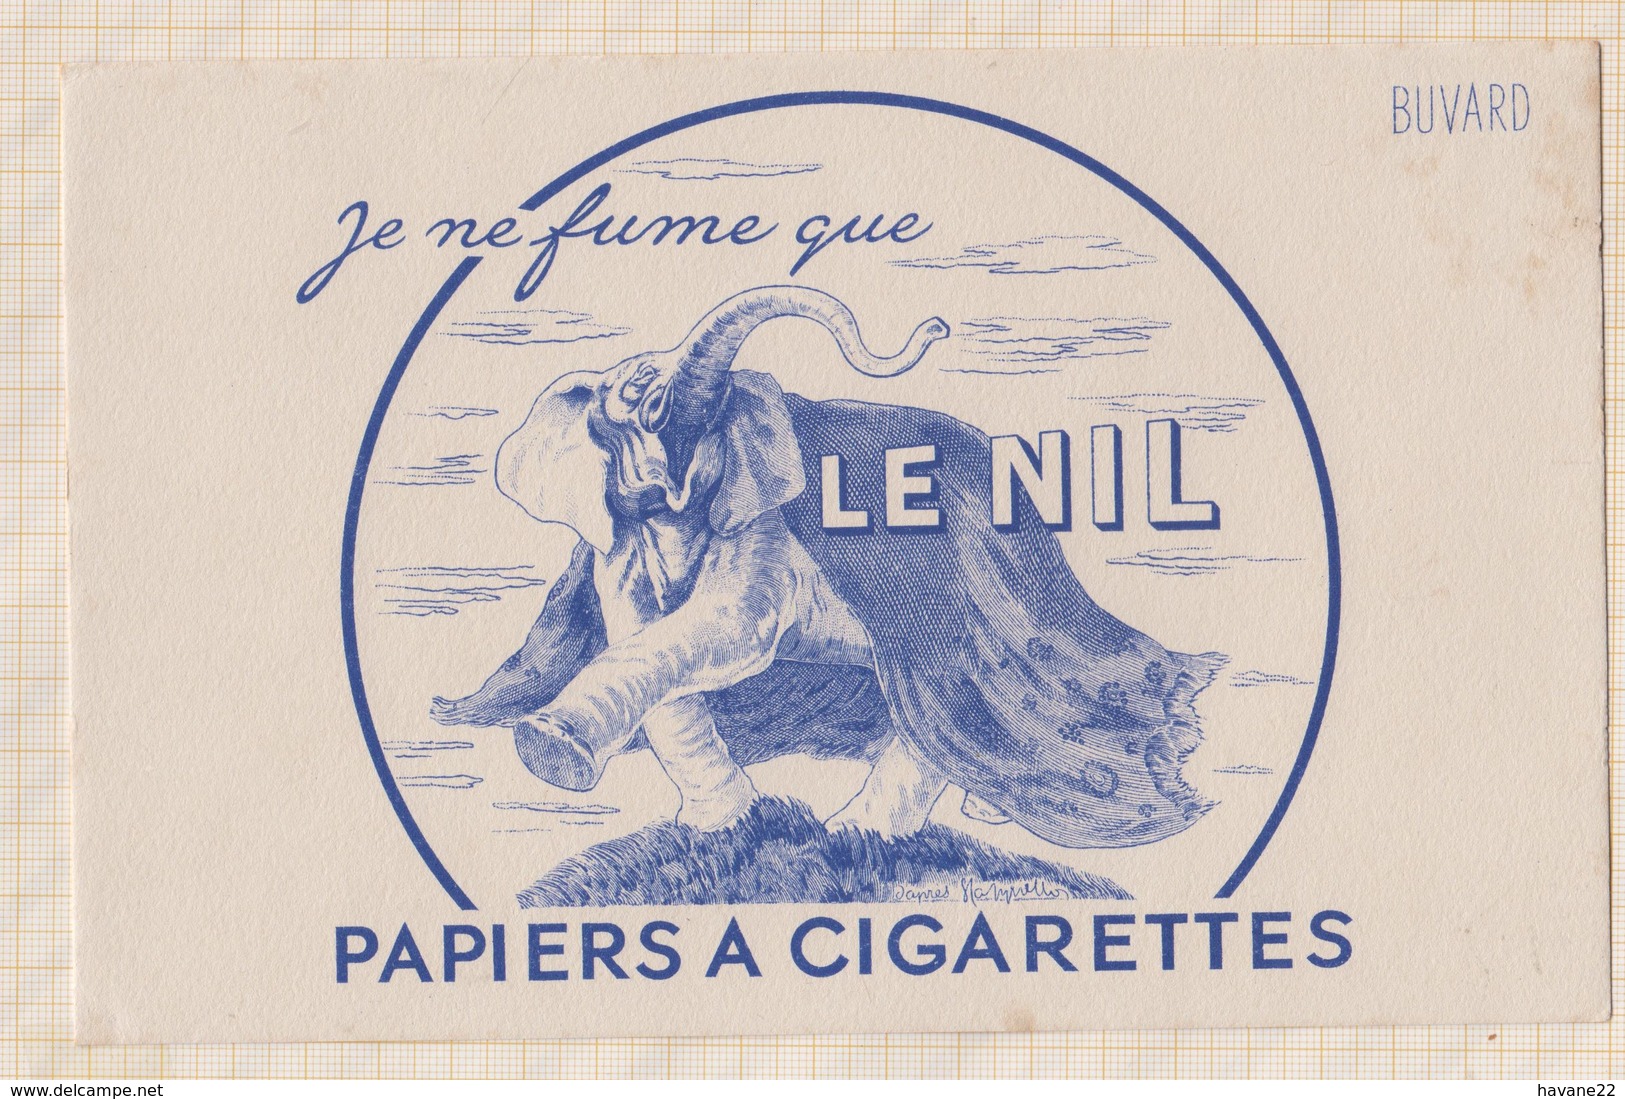 8/36 BUVARD PAPIERS A CIGARETTES LE NIL ELEPHANT - Tabac & Cigarettes